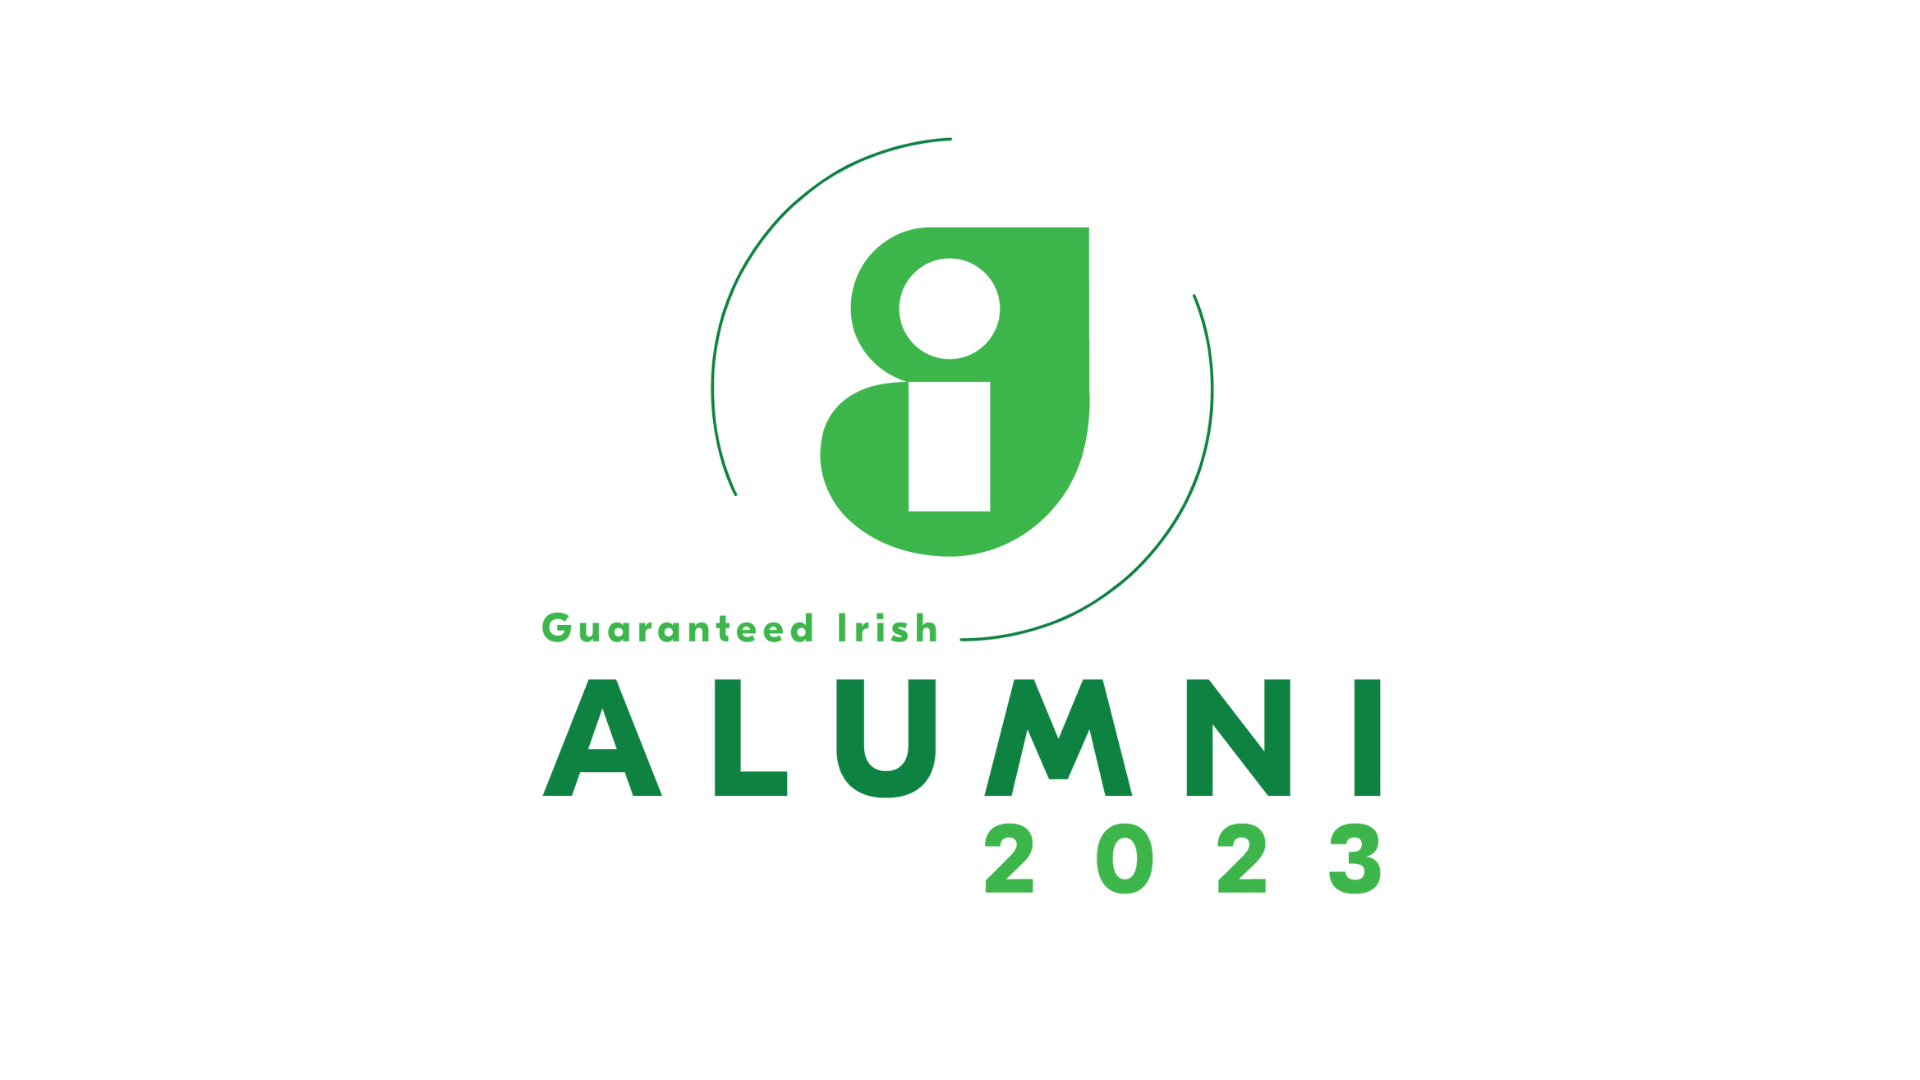 The Guaranteed Irish Alumni Network